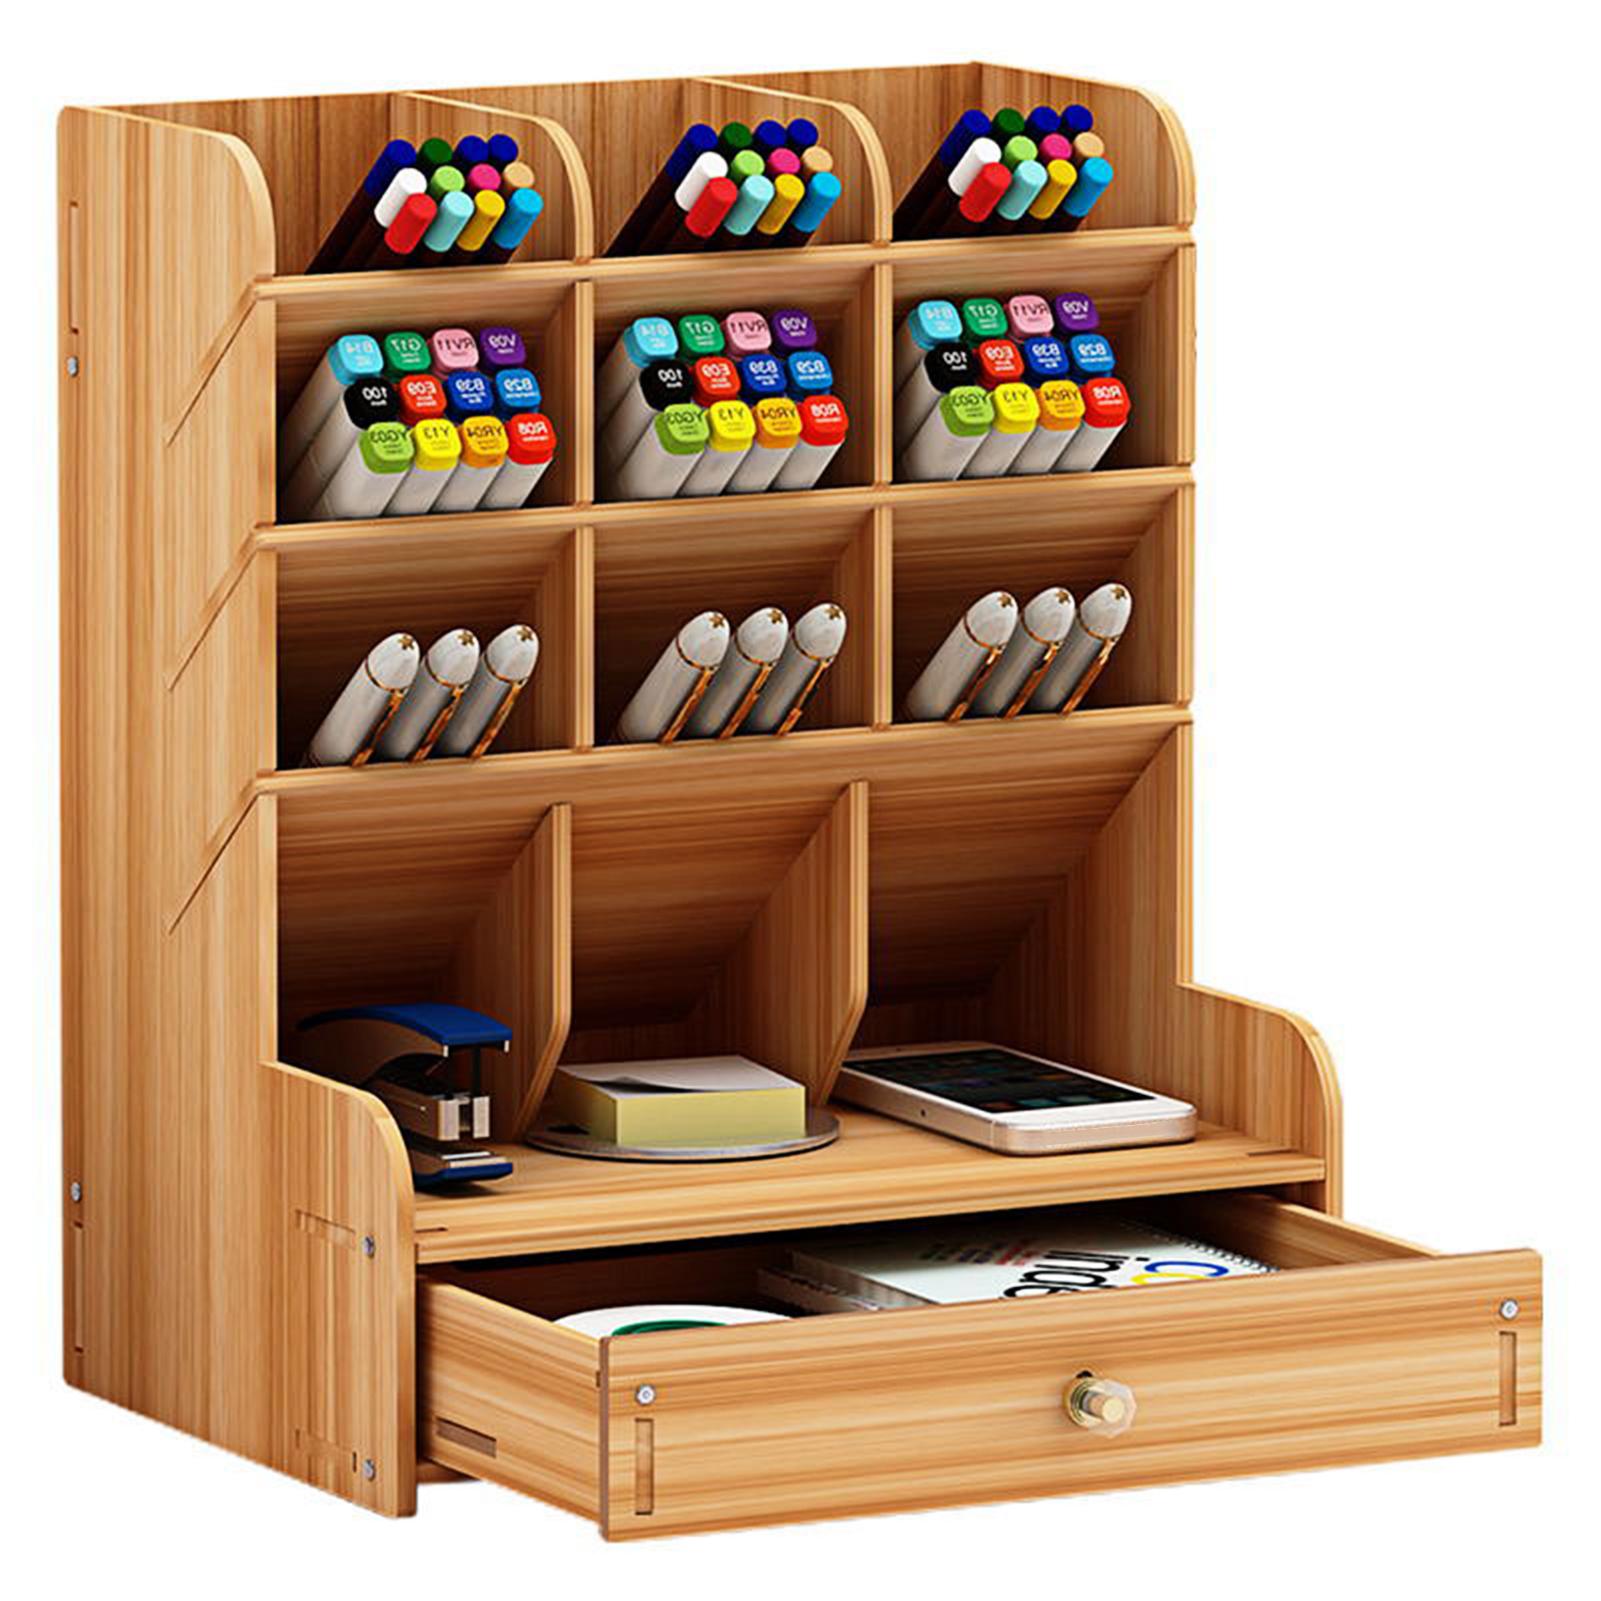 Hộp đựng bút đa chức năng bằng gỗ để bàn với 12 ngăn và 1 ngăn kéo 